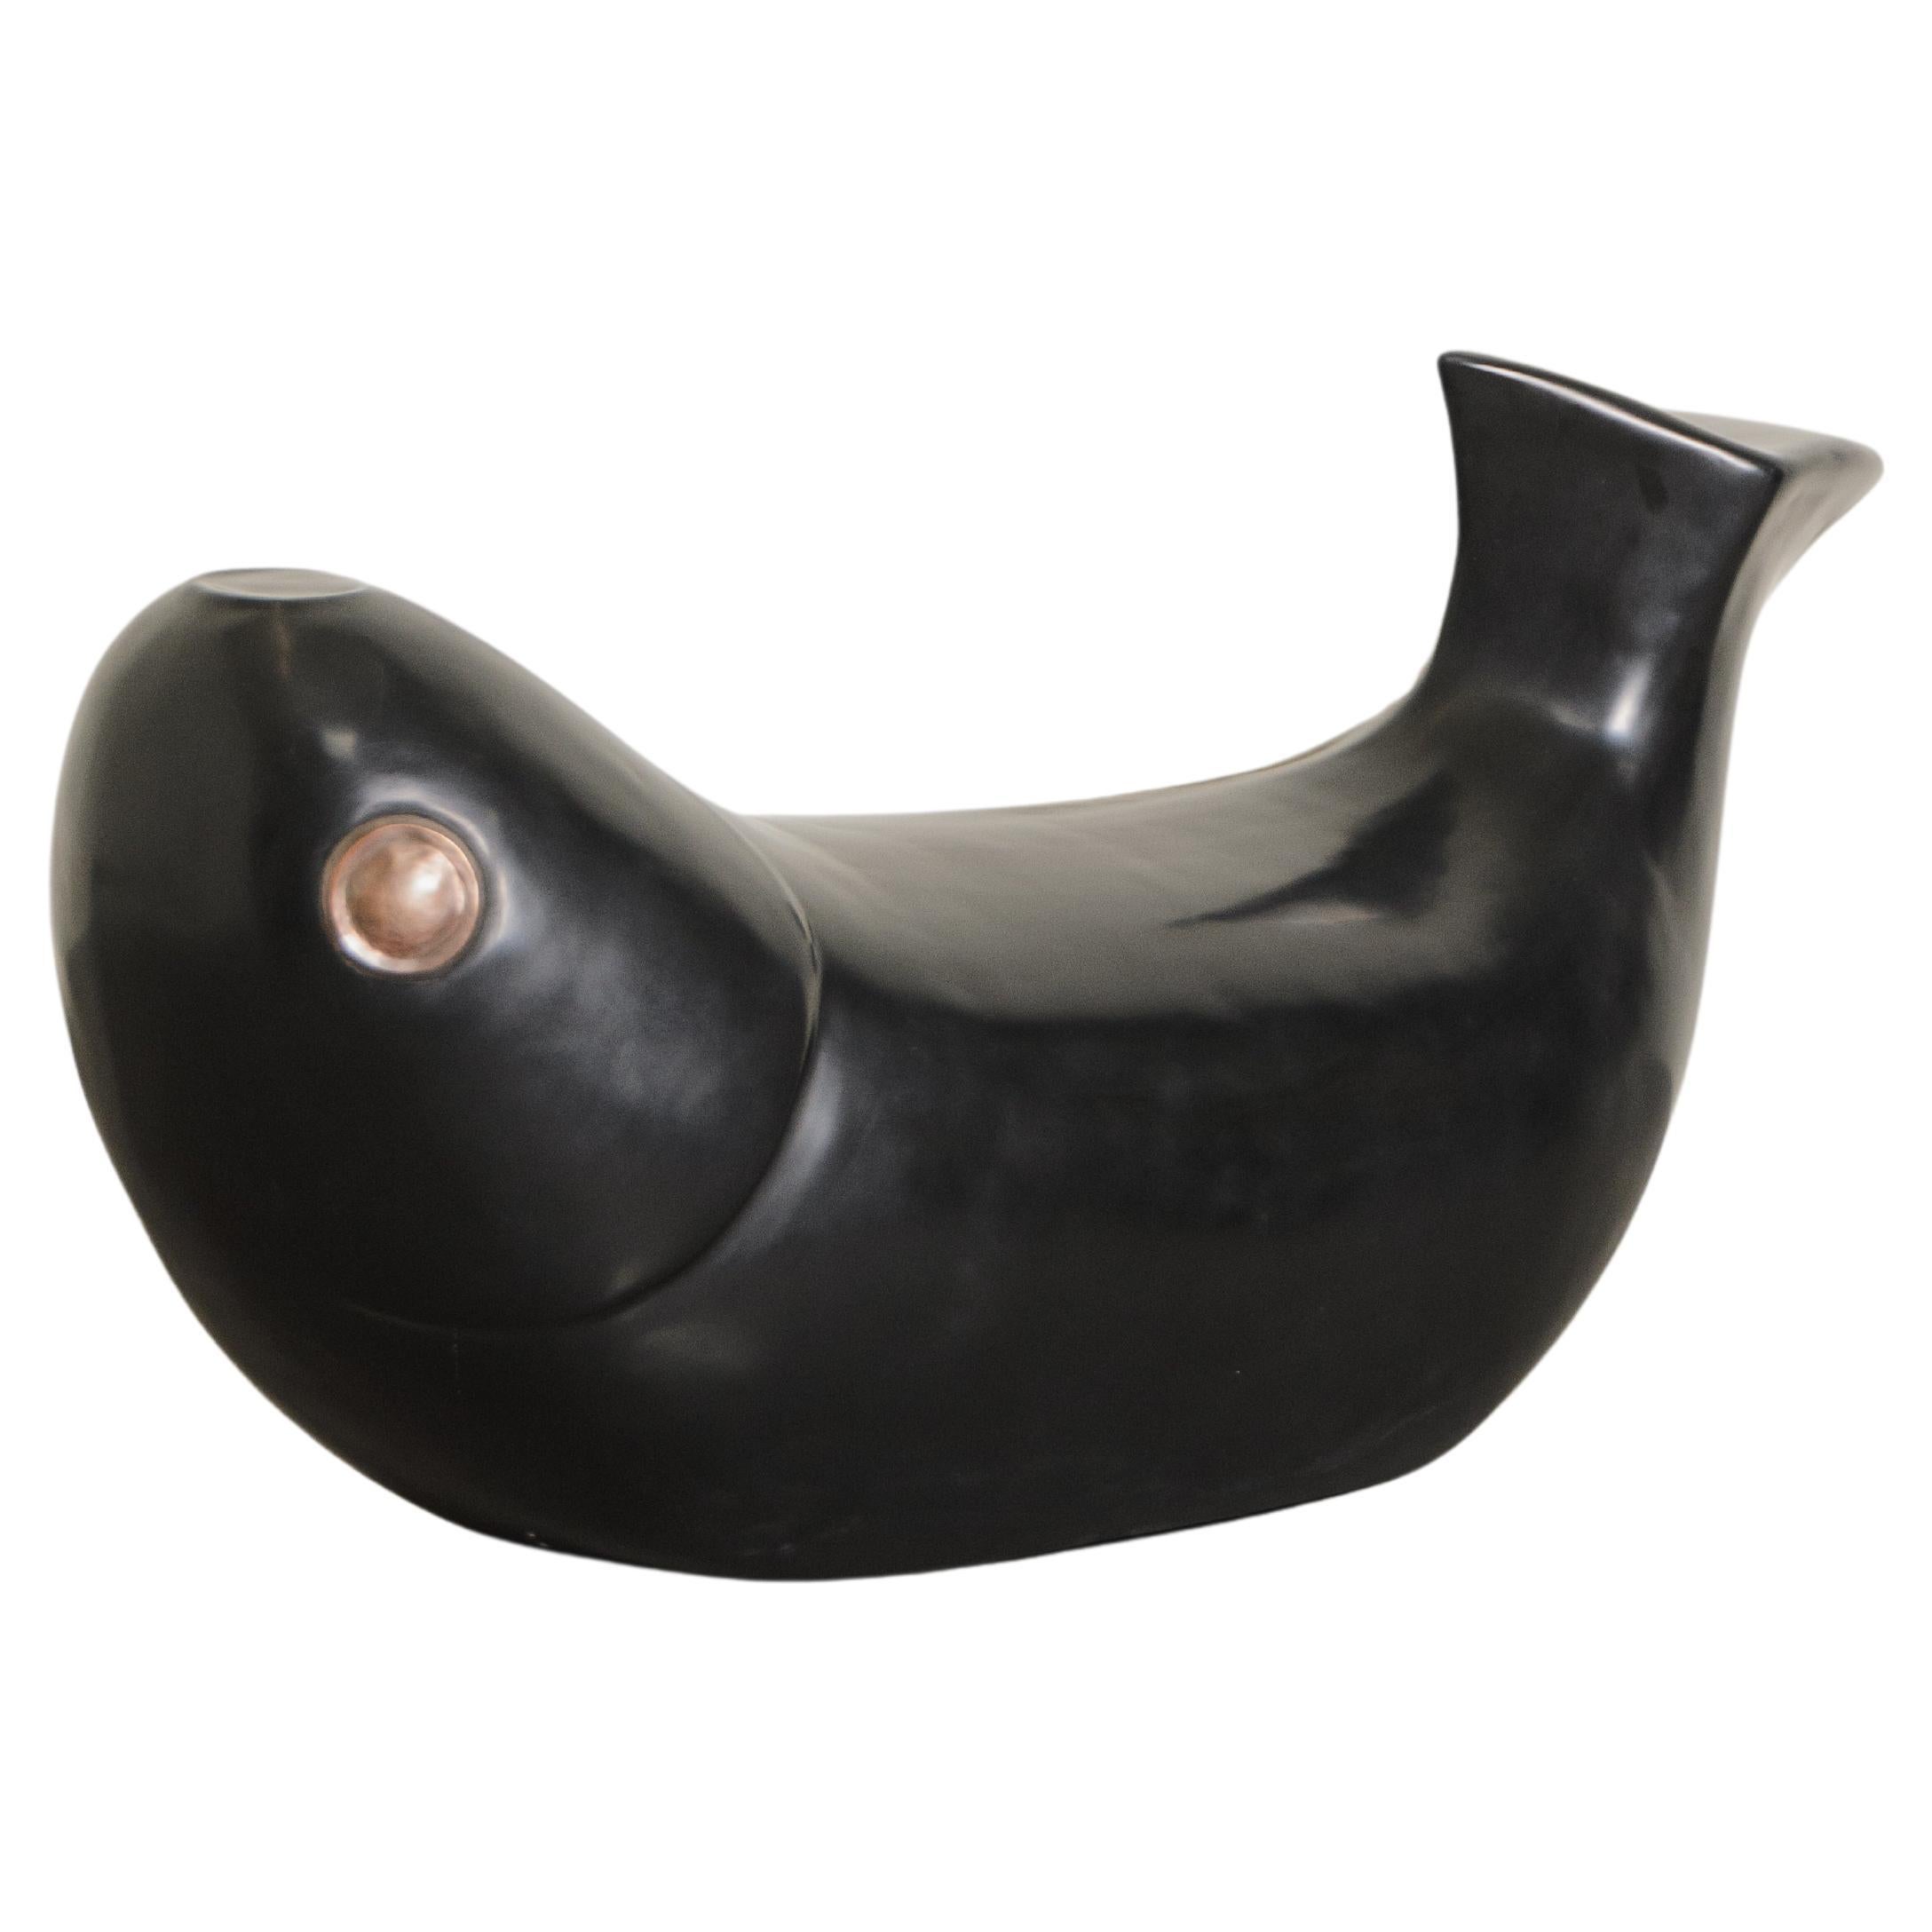 Zeitgenössischer schwarzer lackierter fischsitz mit kupferner öse von Robert Kuo